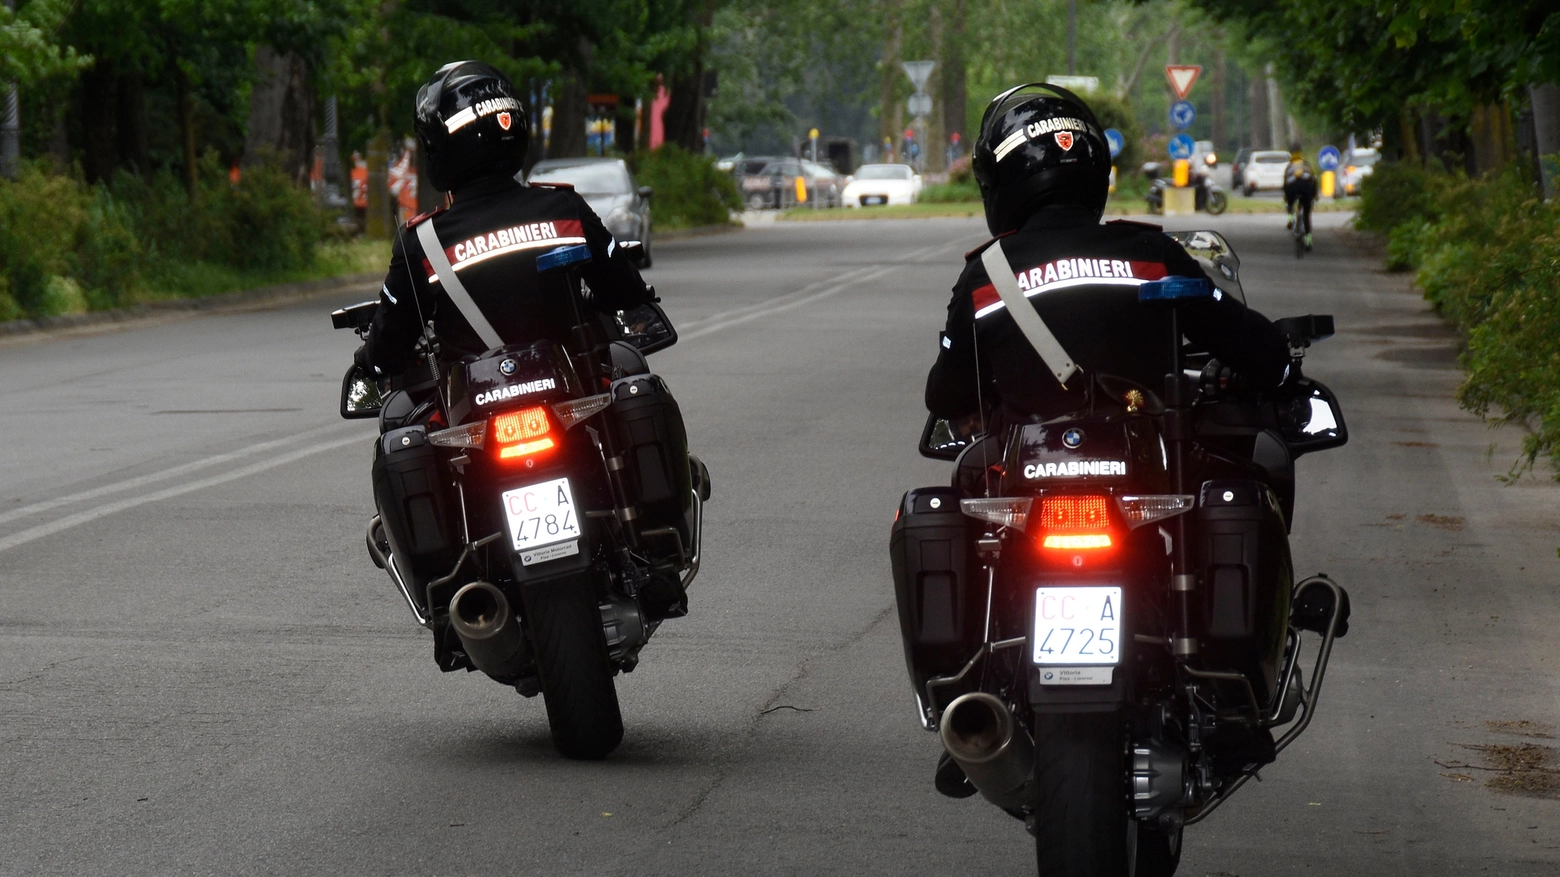 Carabinieri motociclisti di pattuglia